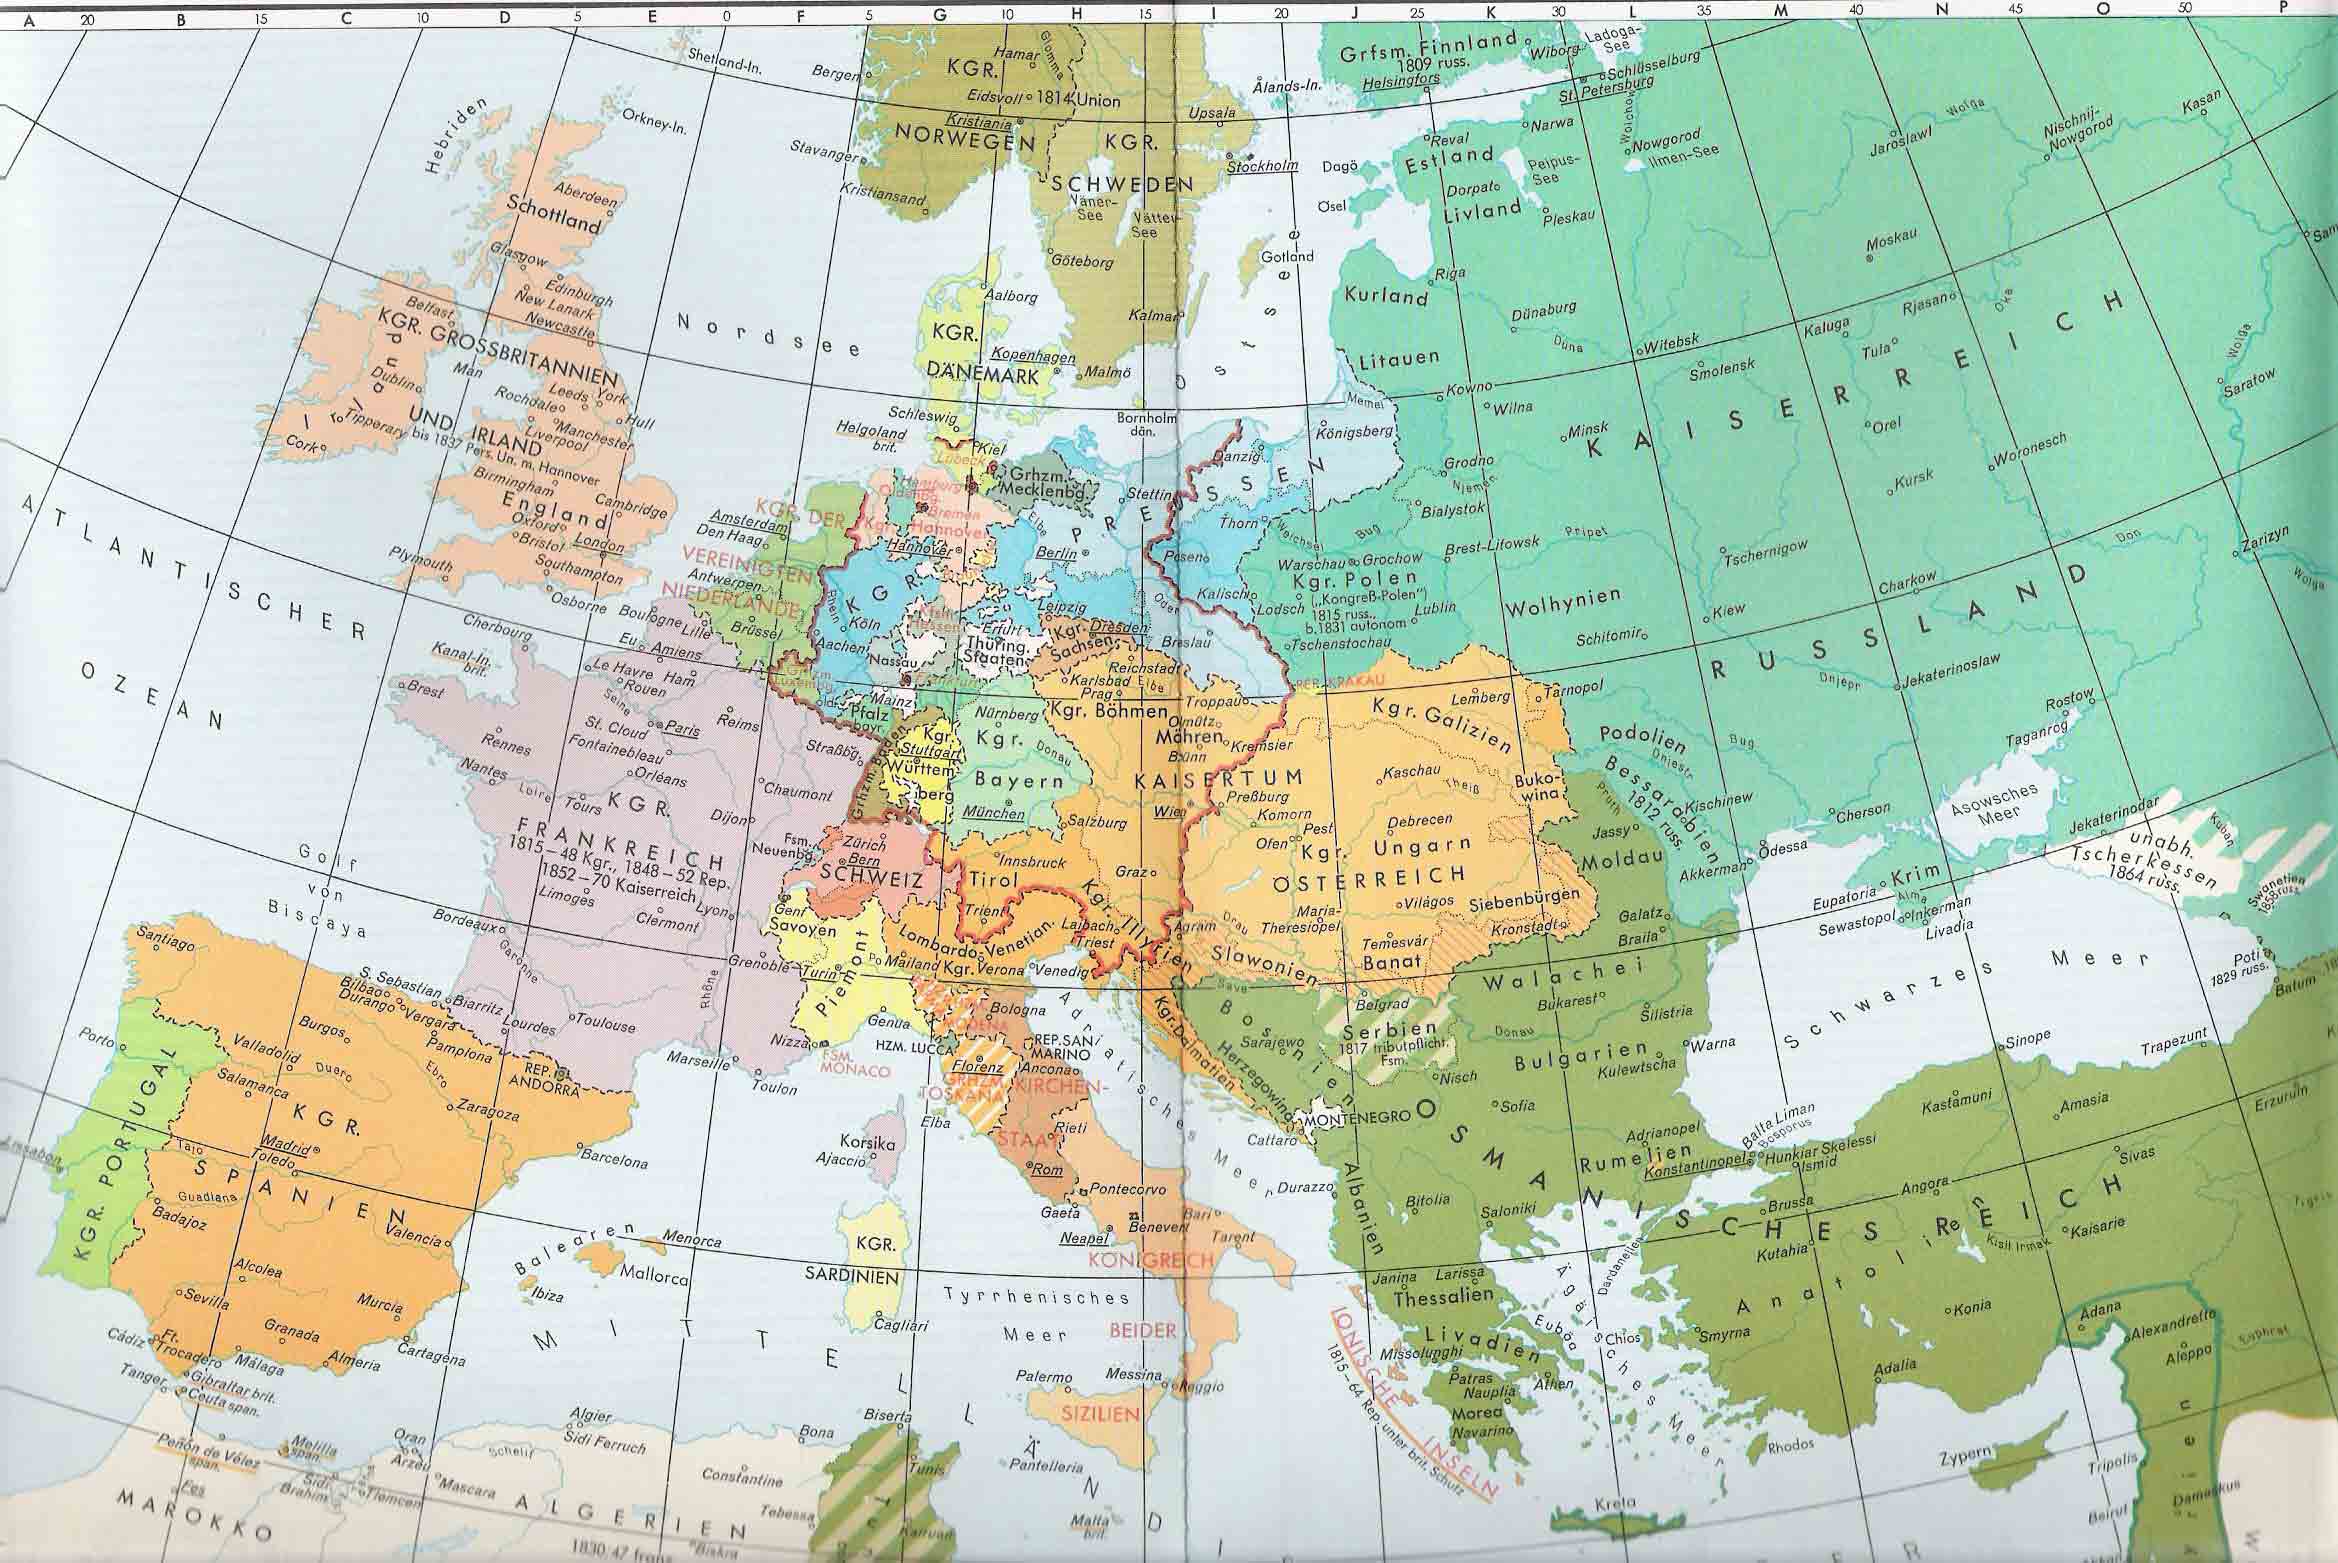 Europa en 1815 después del Congreso de Viena